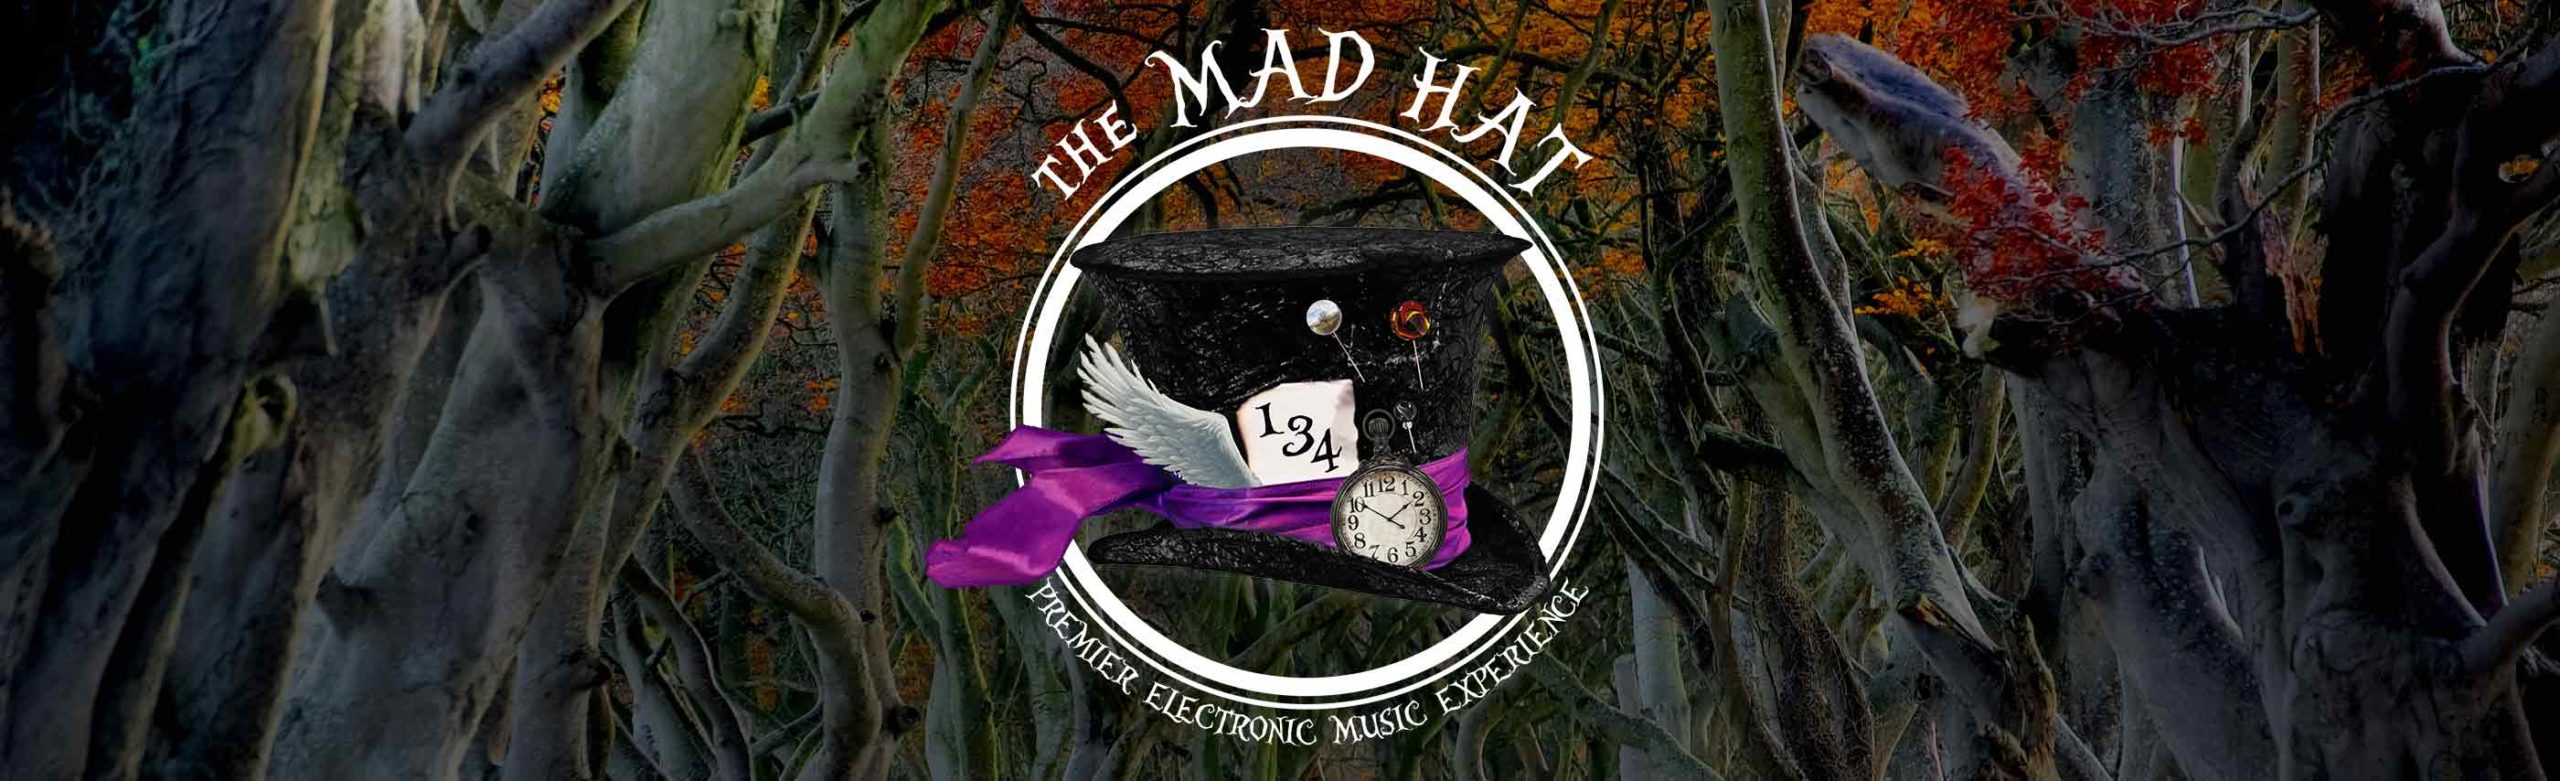 The Mad Hat: Vol. VI